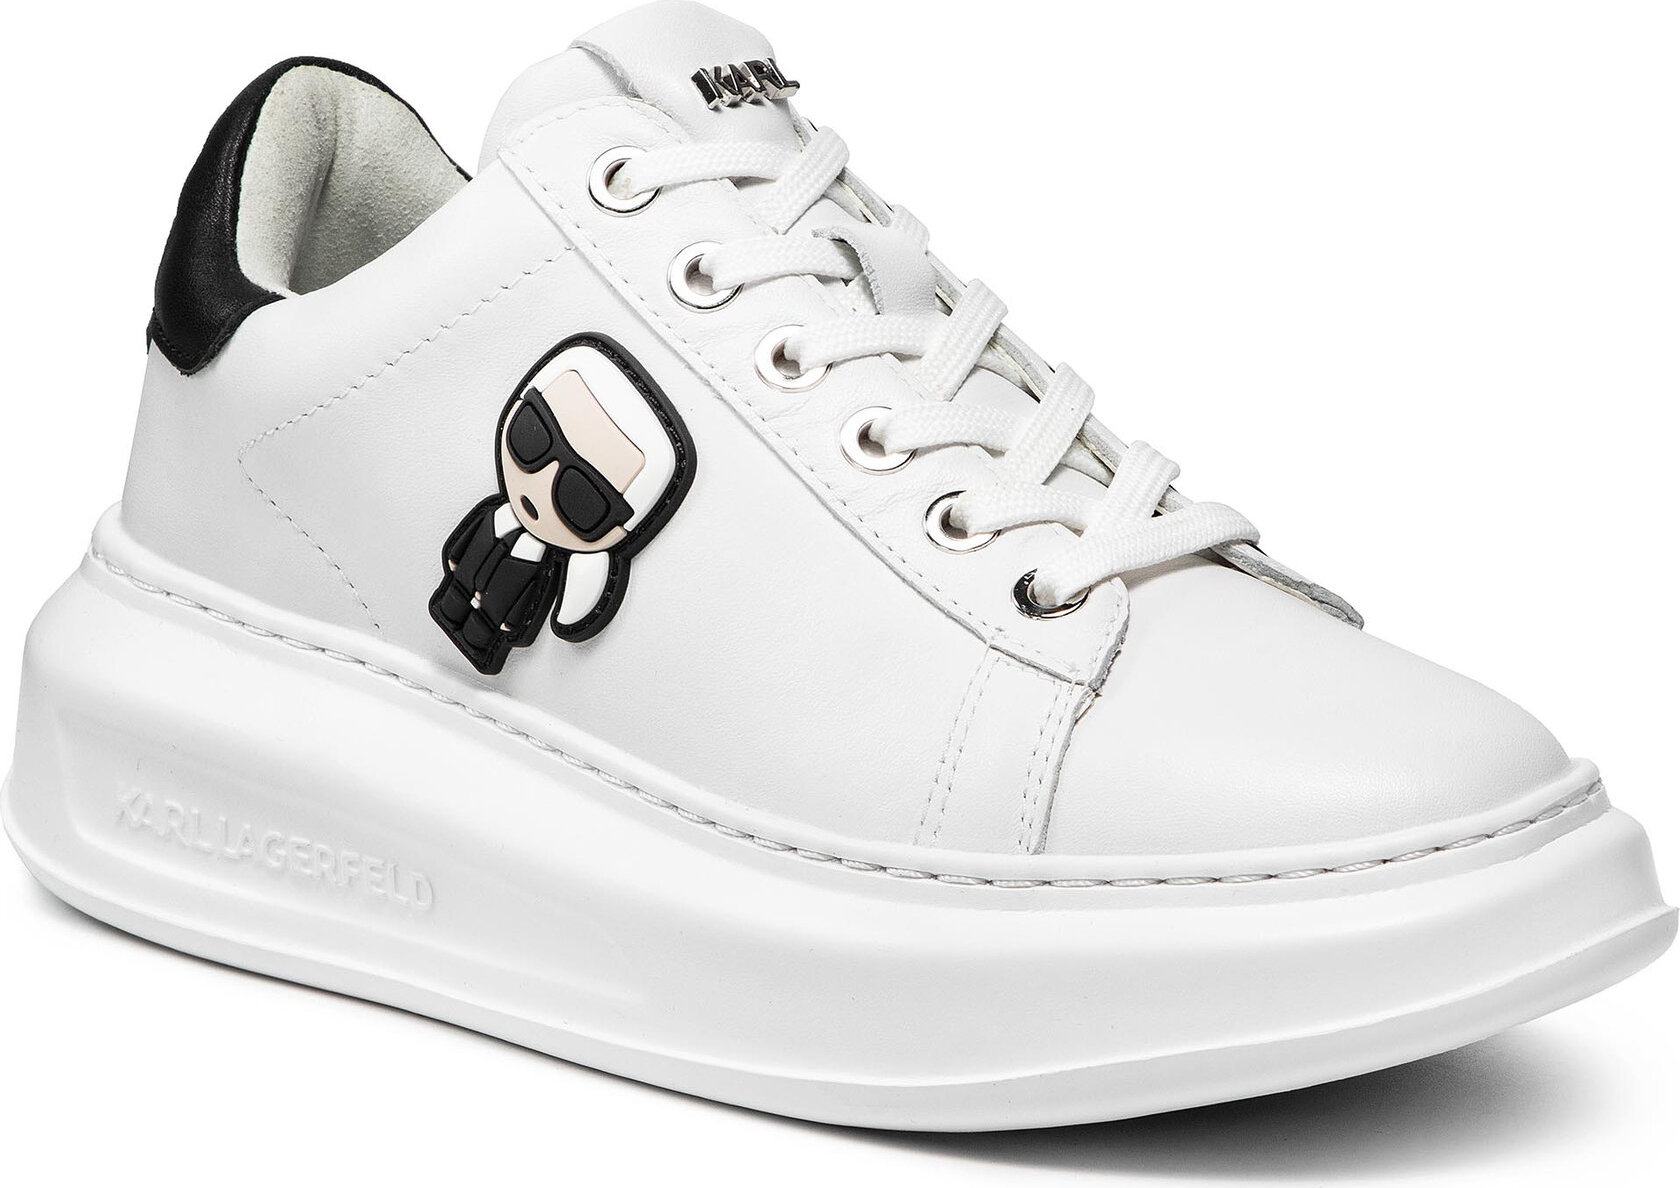 Sneakersy KARL LAGERFELD KL62530 White Lthr